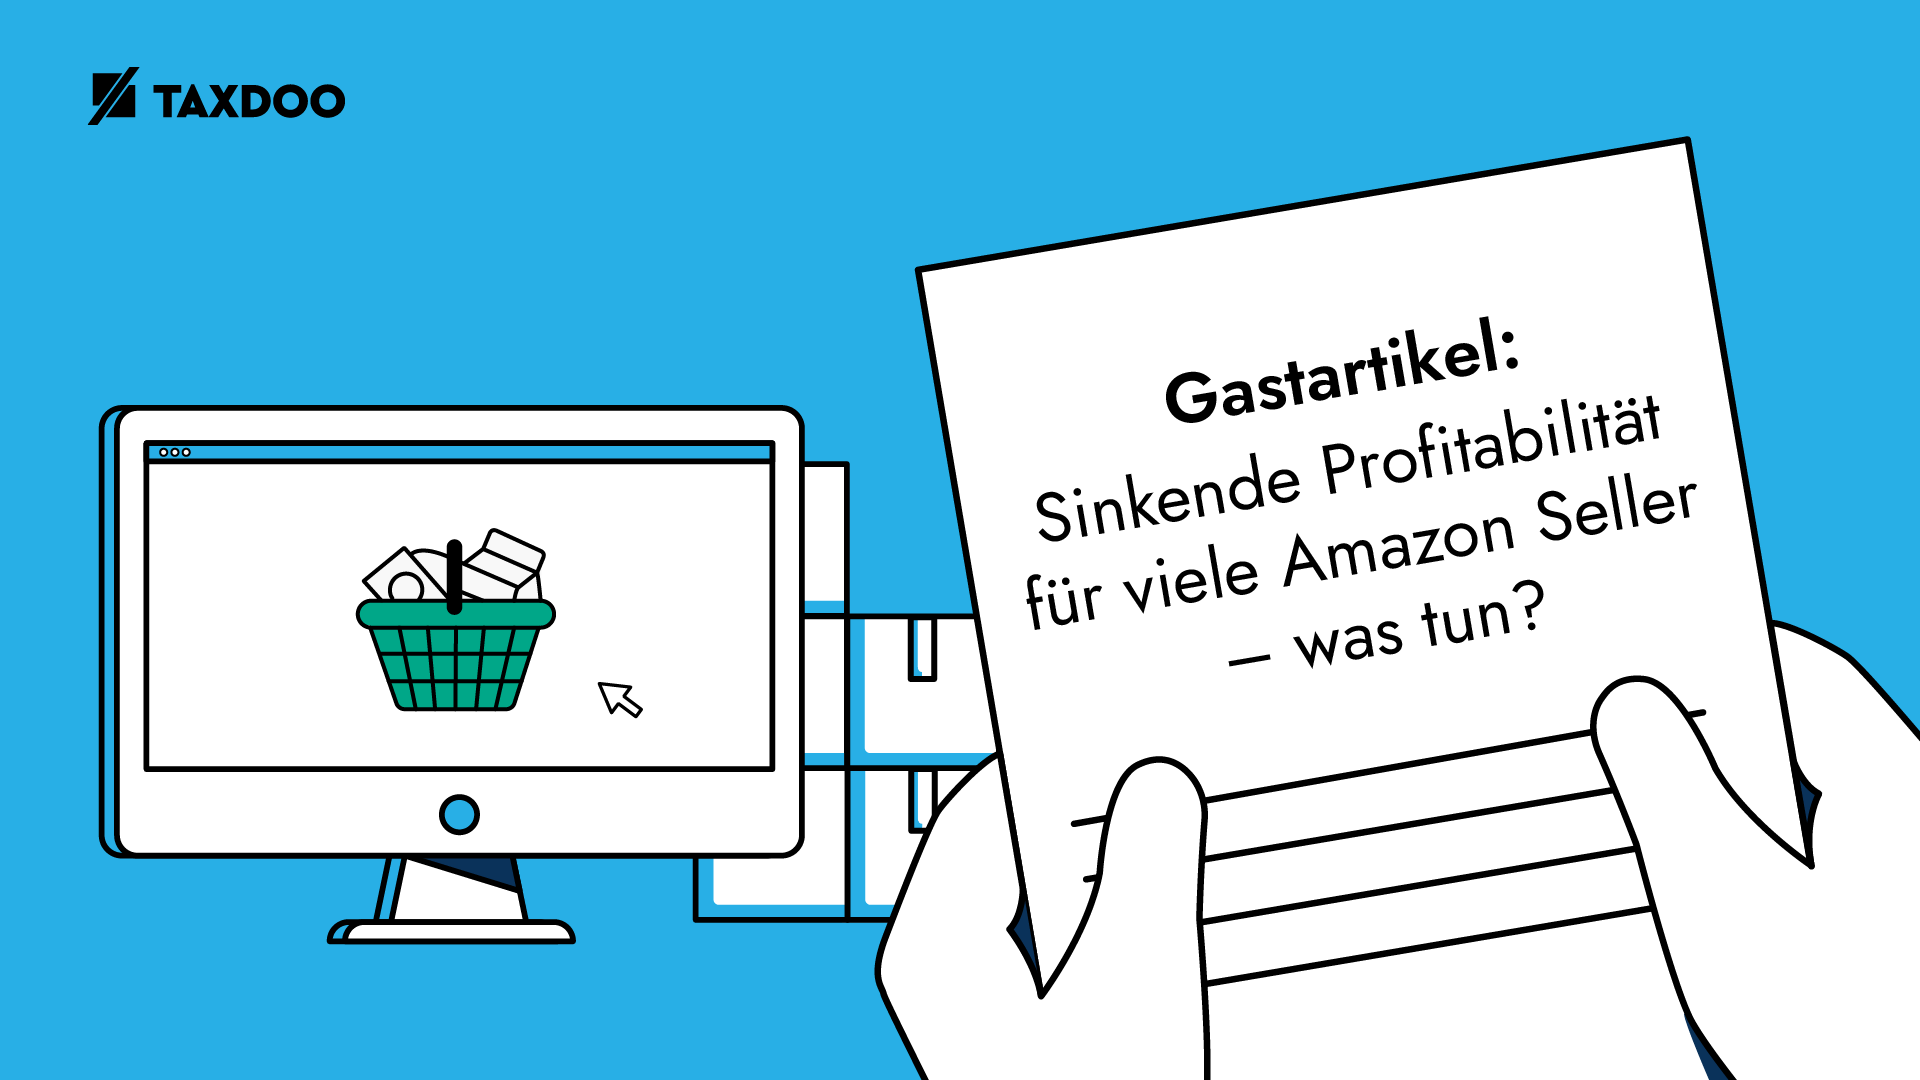 Gastartikel: Sinkende Profitabilität für viele Amazon Seller – was tun?